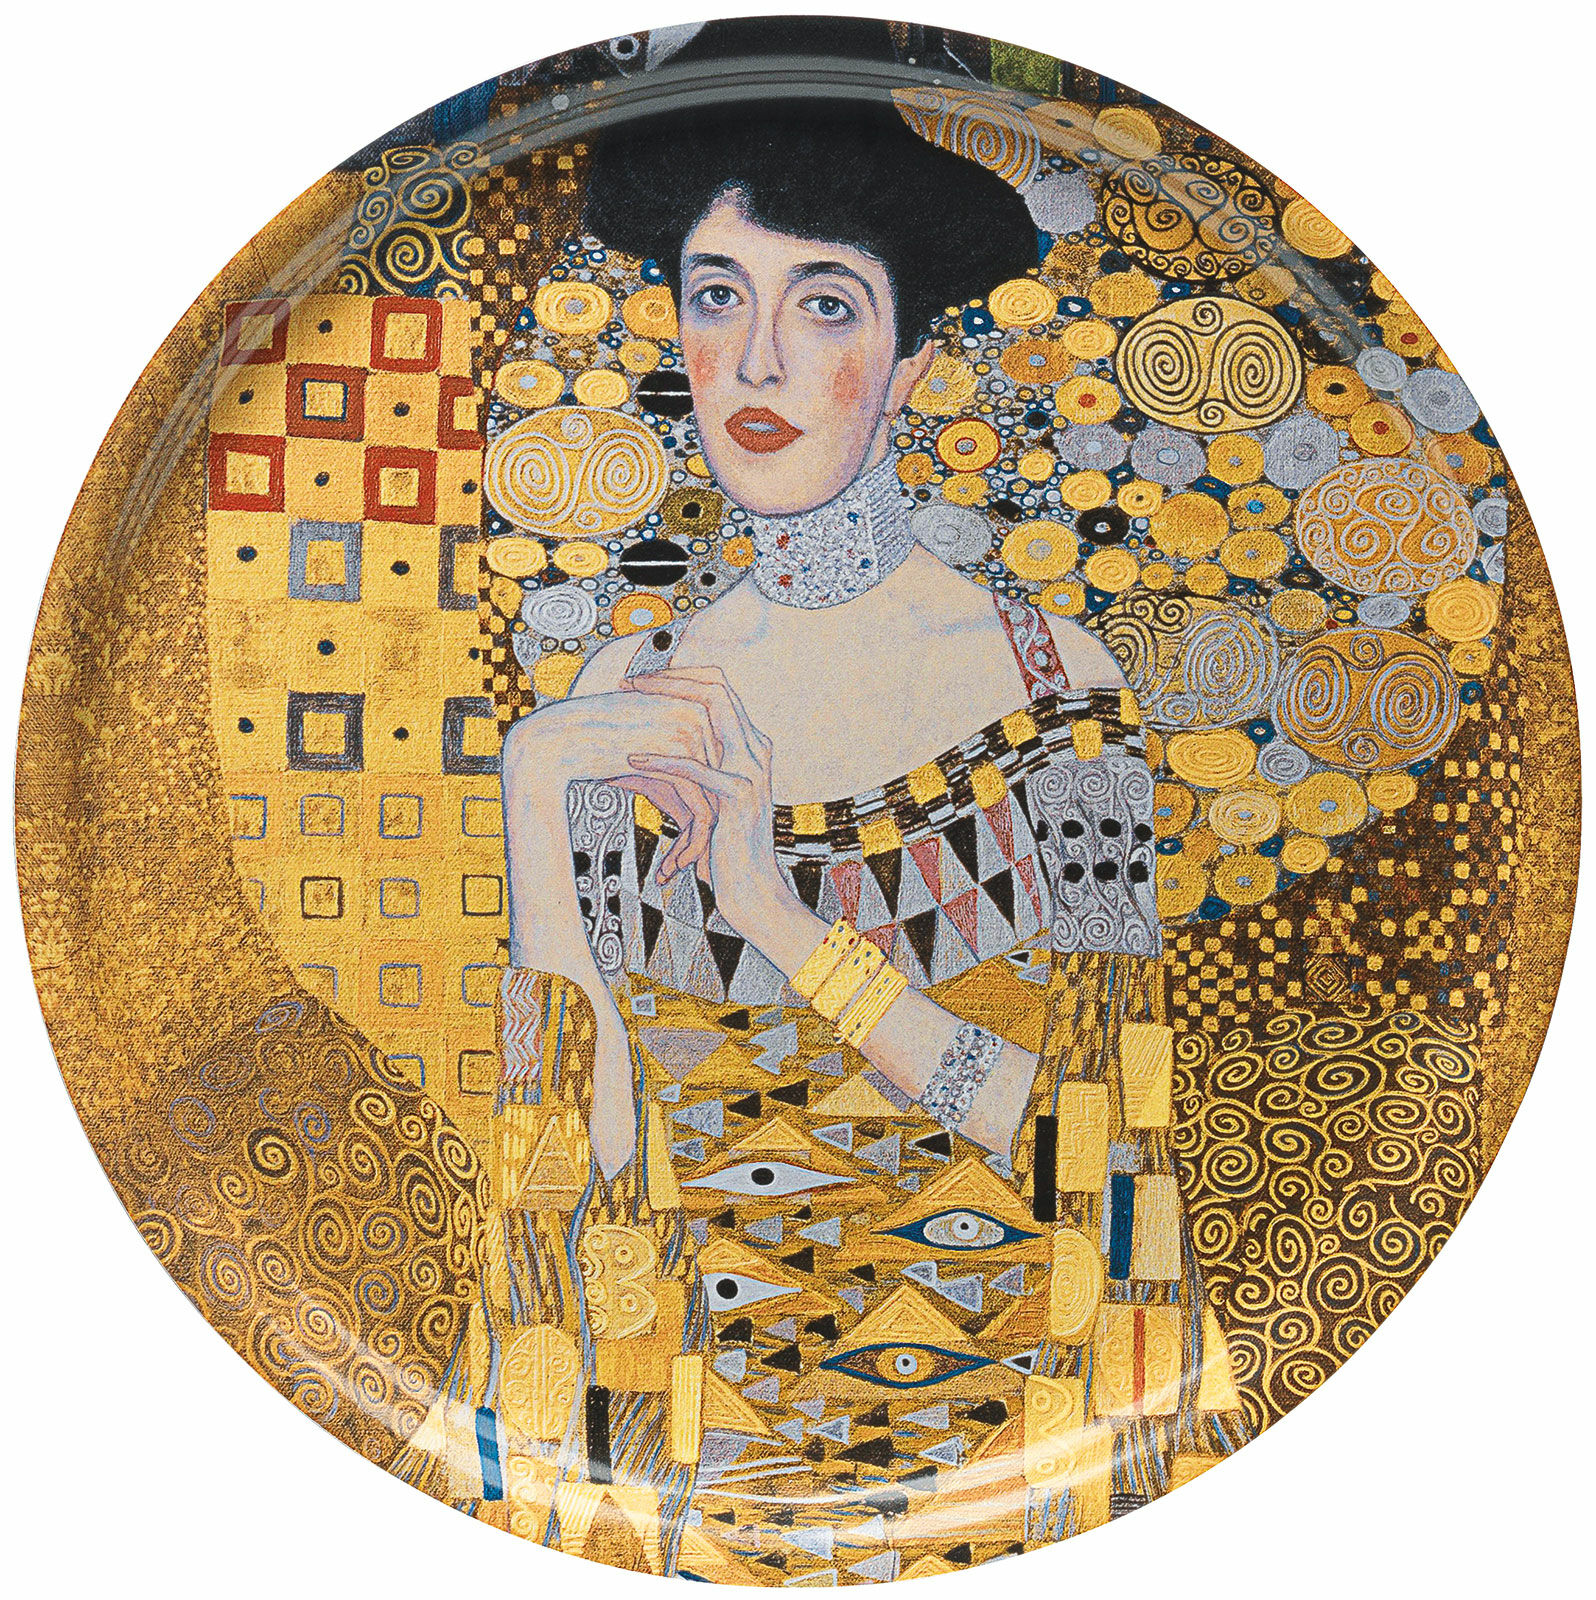 Houten dienblad "Adele Bloch-Bauer" von Gustav Klimt